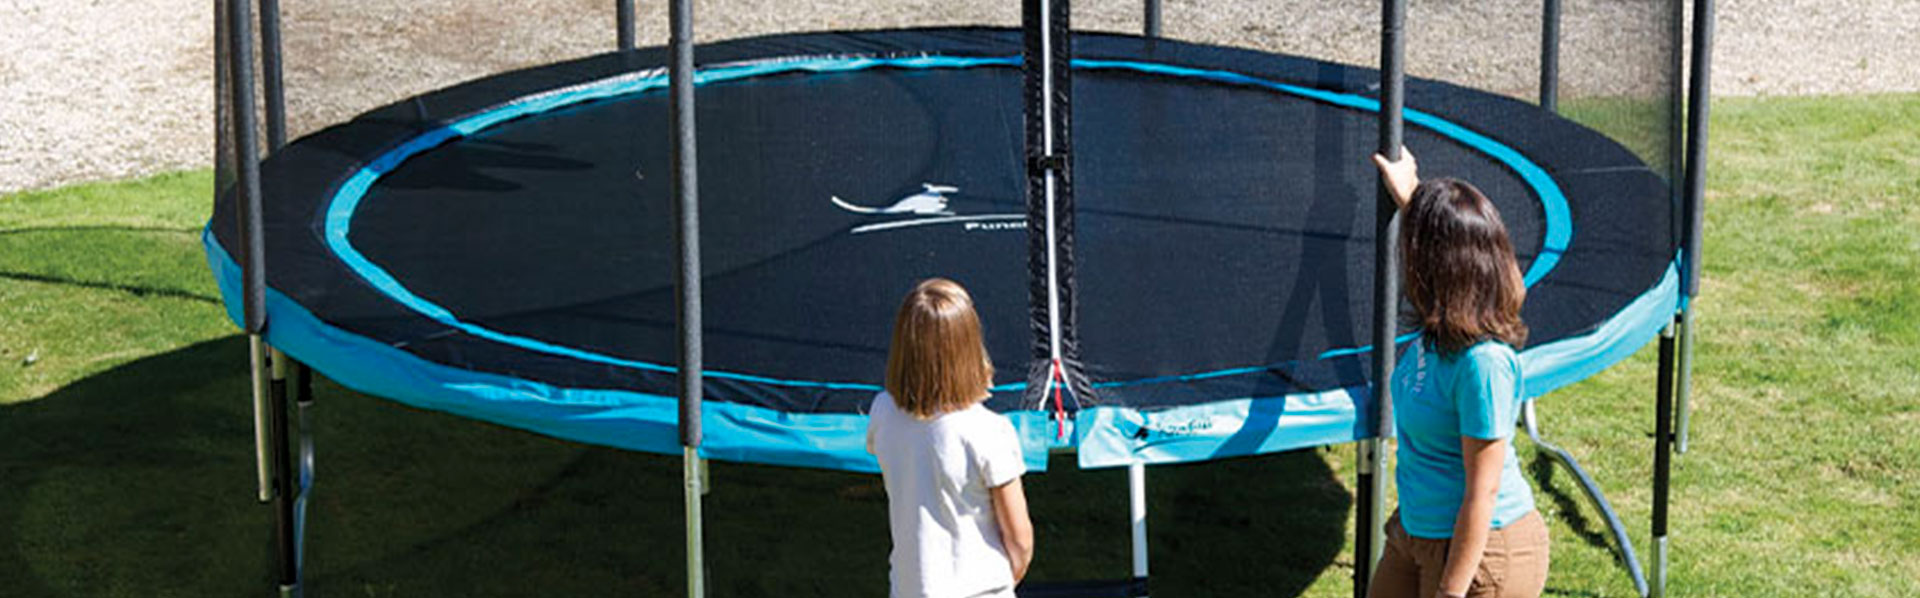 Les bienfaits sur la santé de l’utilisation d’un trampoline